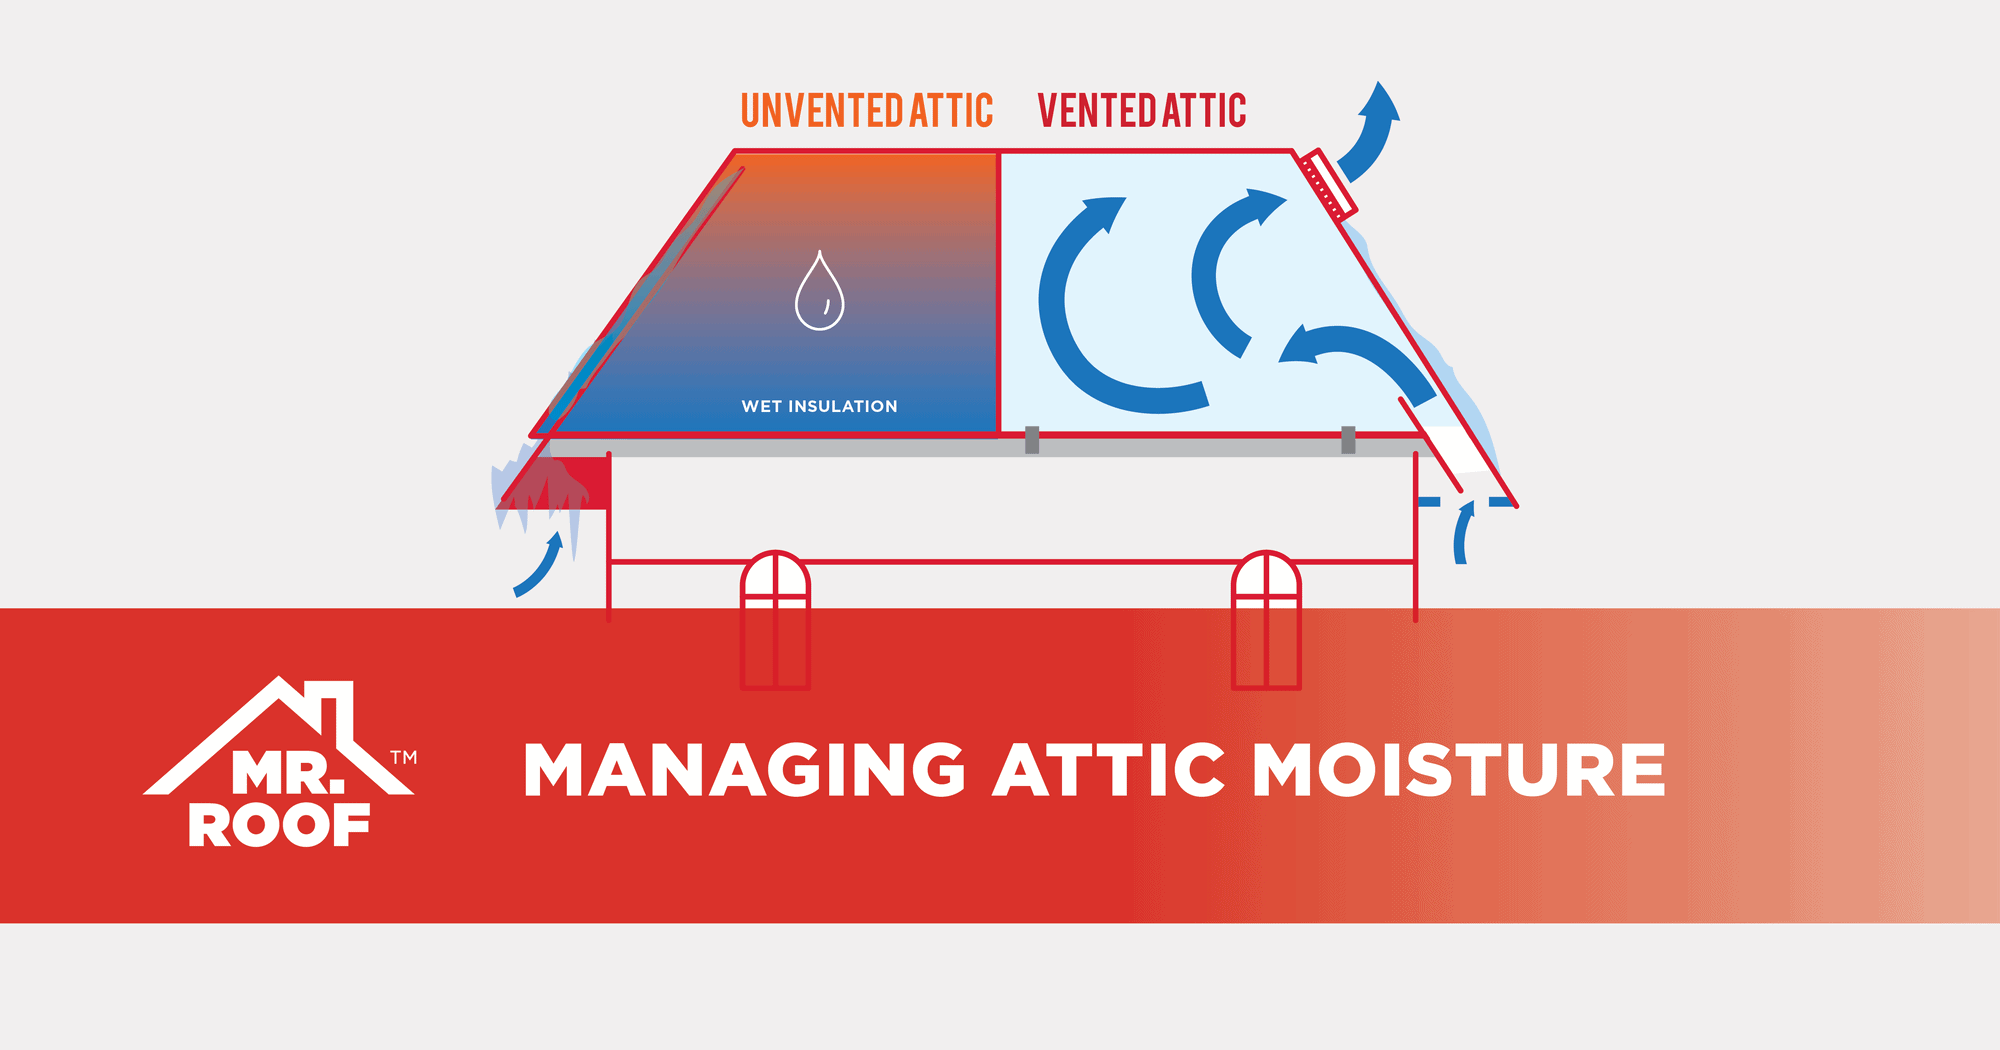 Managing attic moisture